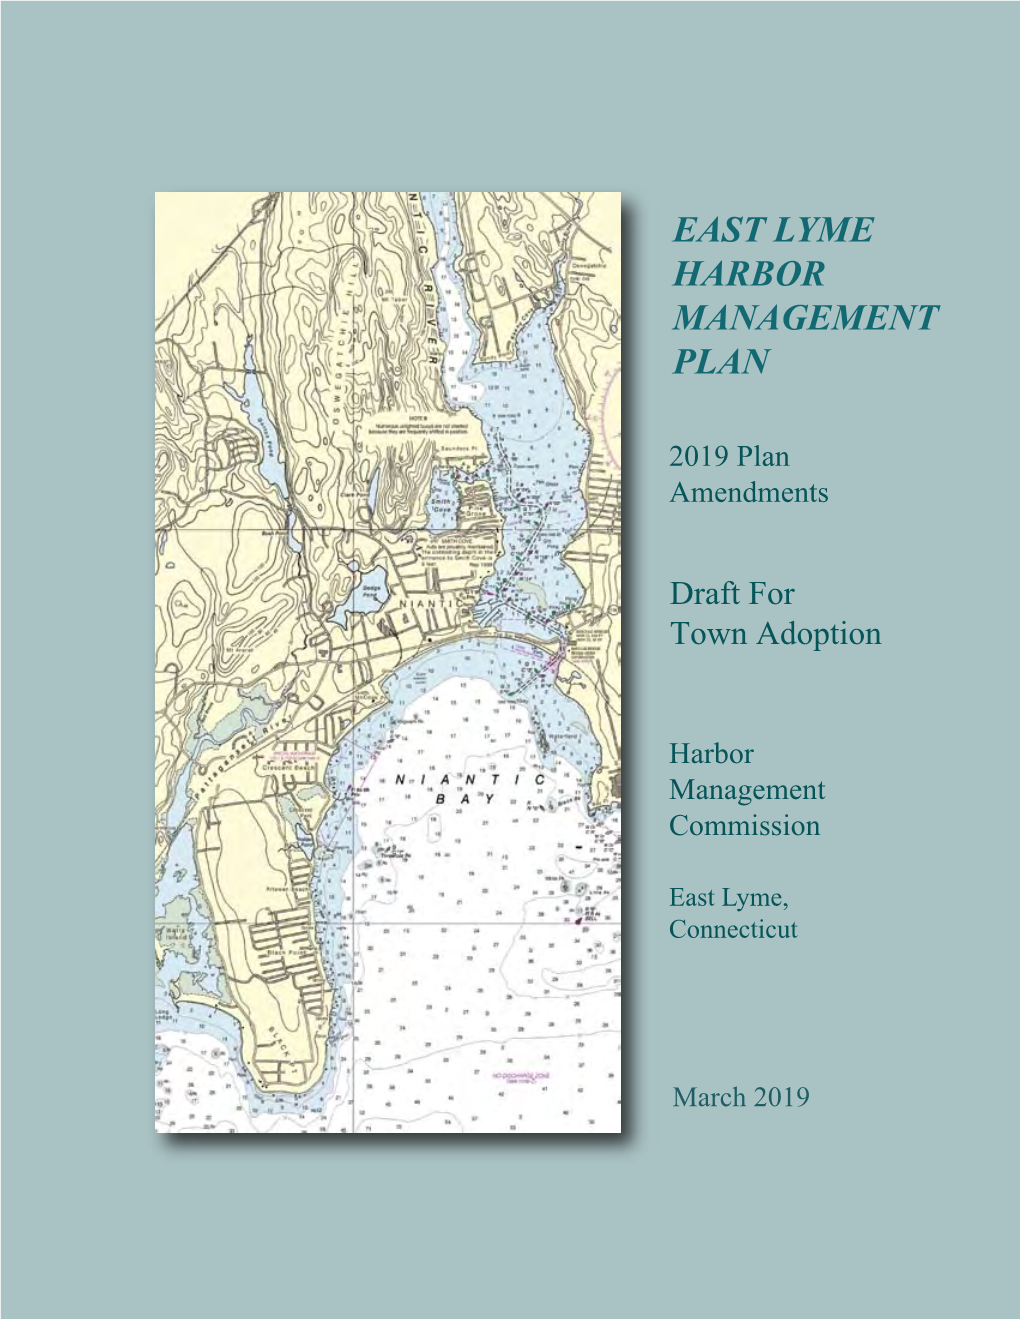 East Lyme Harbor Management Plan 2019 Plan Amendments